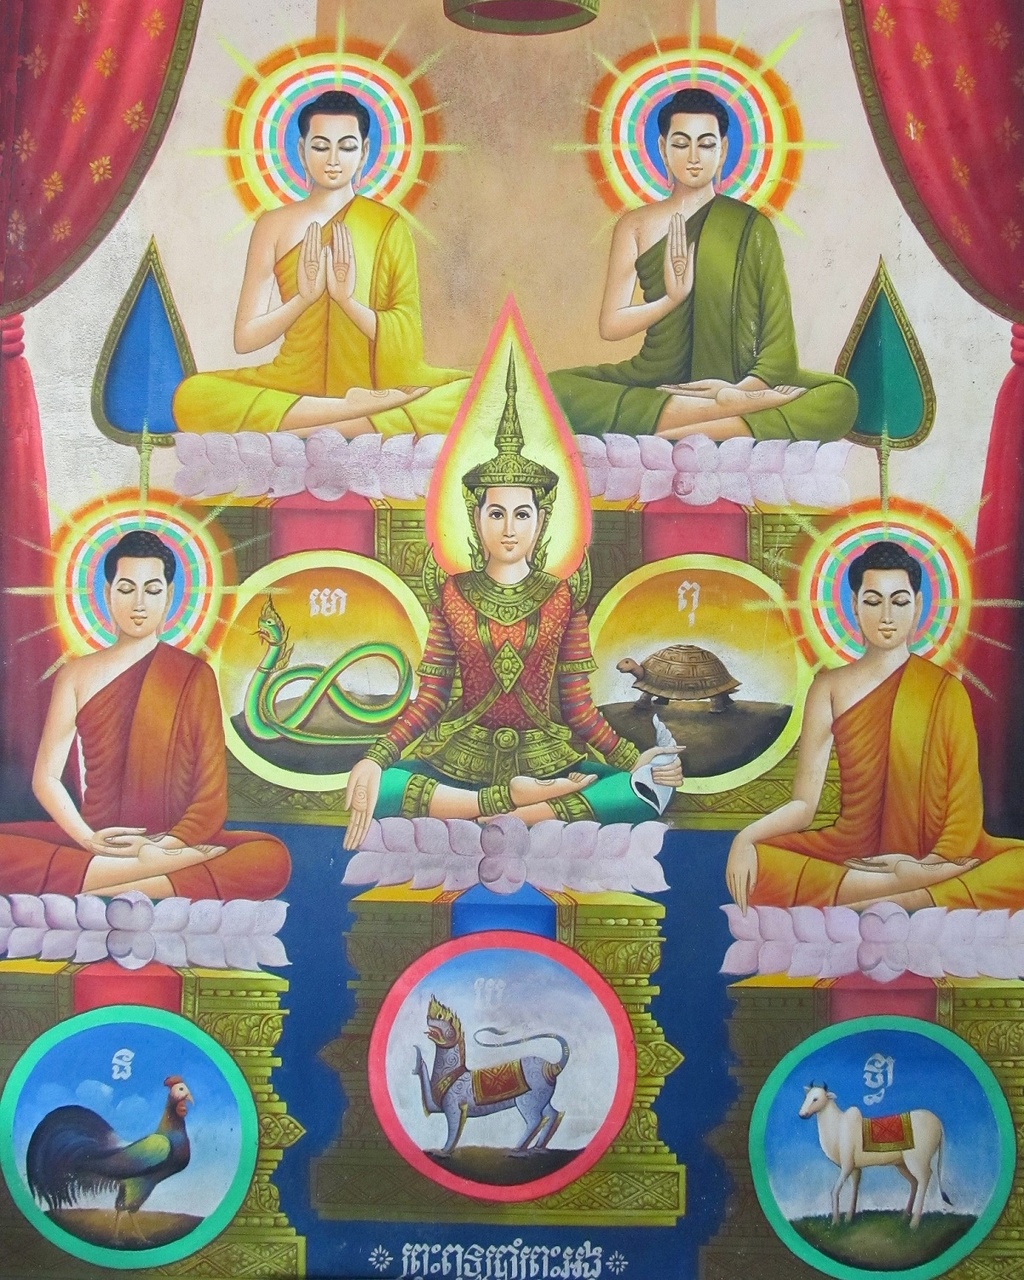 Pět Buddhů - Sihanoukville - Kambodža